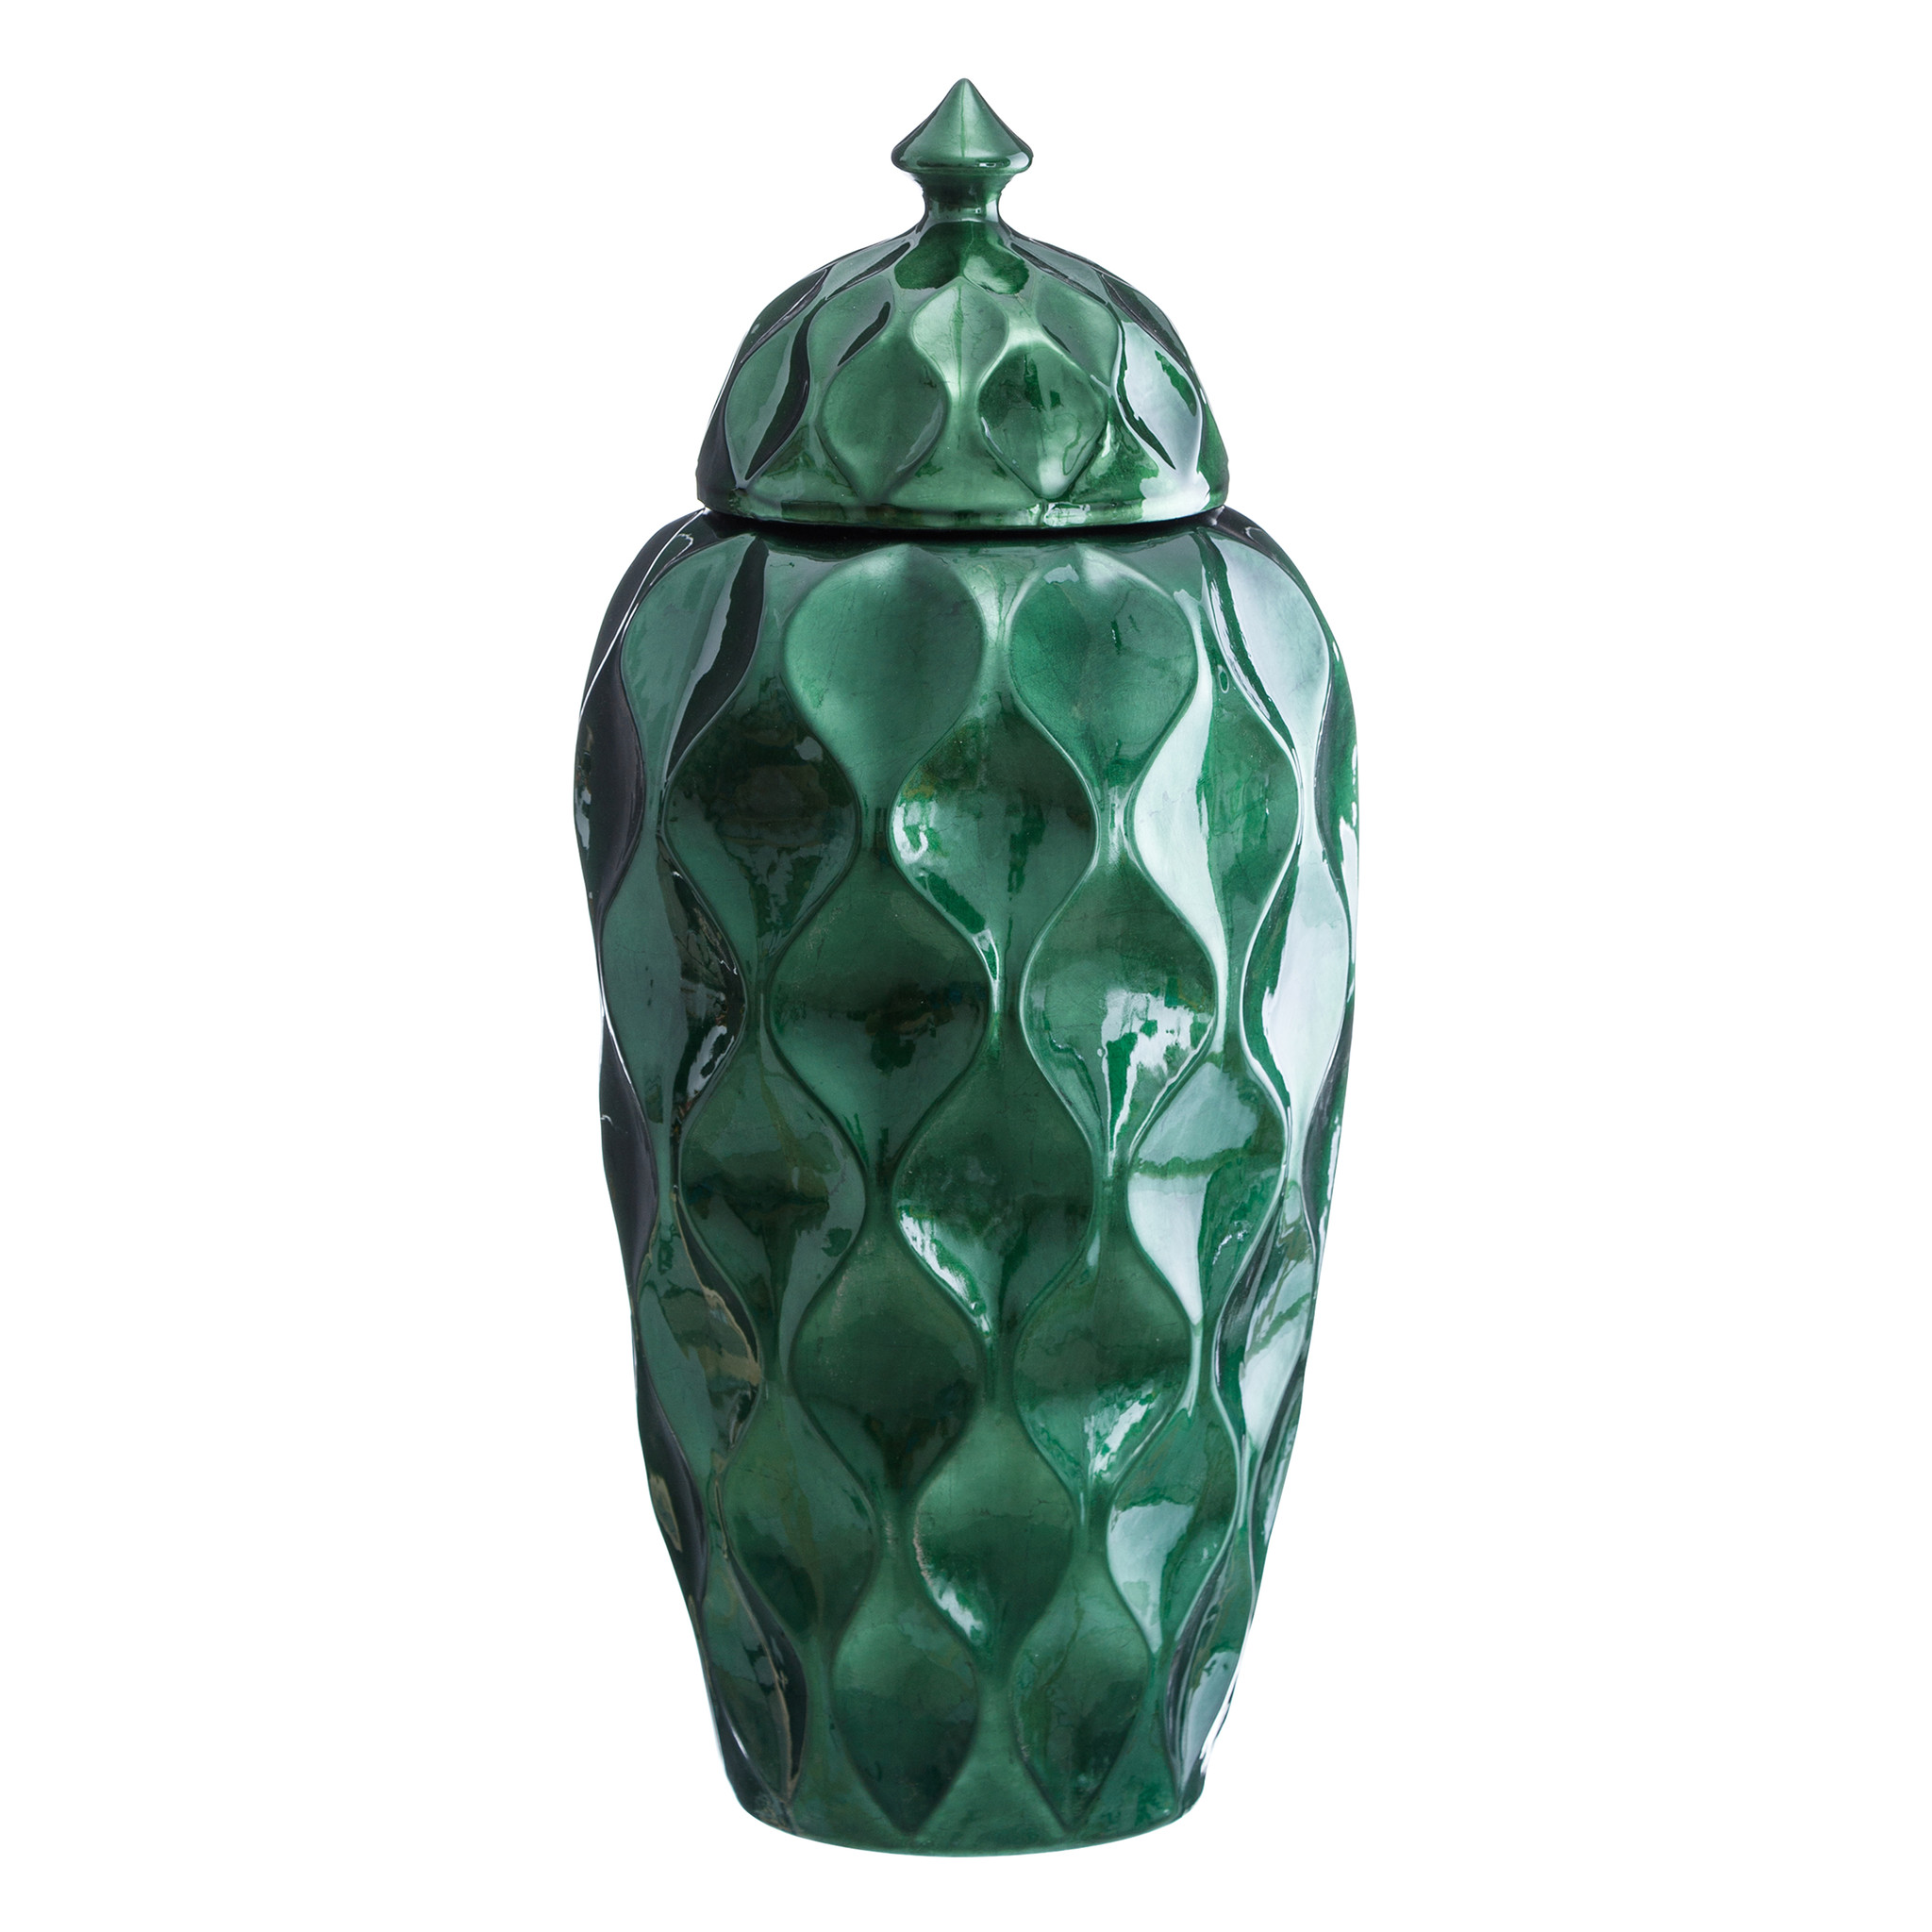 Ваза с крышкой купить. Ваза с крышкой. Декоративная ваза с крышкой. Ваза зеленая с крышкой керамическая. Ваза бутыль зеленая керамическая.